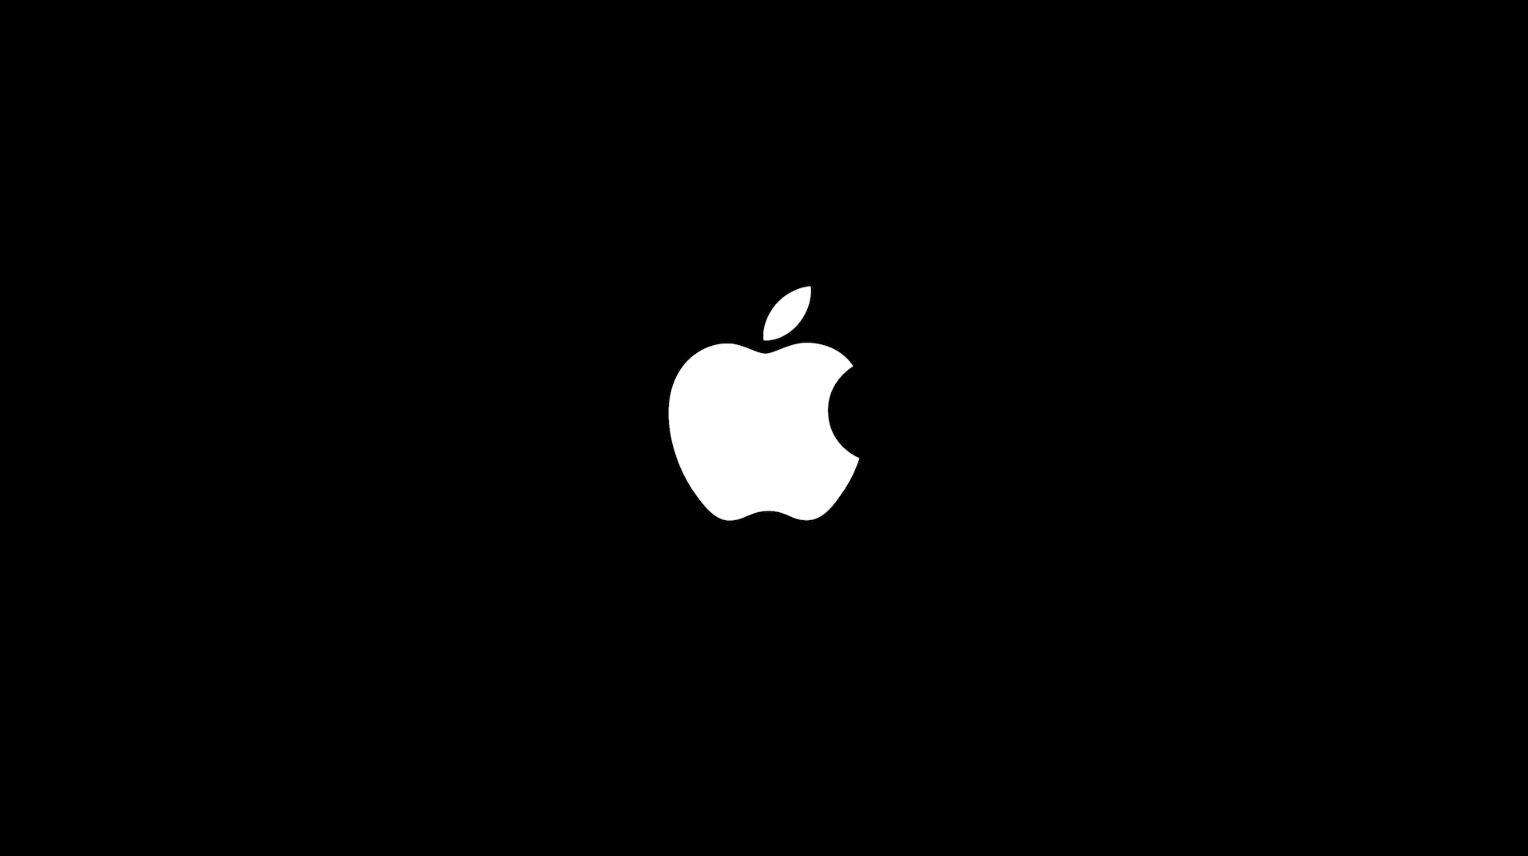 เฉลยแล้ว! Peek Performance กับไฮไลต์ผลิตภัณฑ์ใหม่ของ Apple ในงาน Apple Event : ชิป M1 Ultra เปิดตัว iPhone 13 สีใหม่ iPhone SE และ iPad Air รุ่นใหม่ รองรับ 5G และ Mac Studio